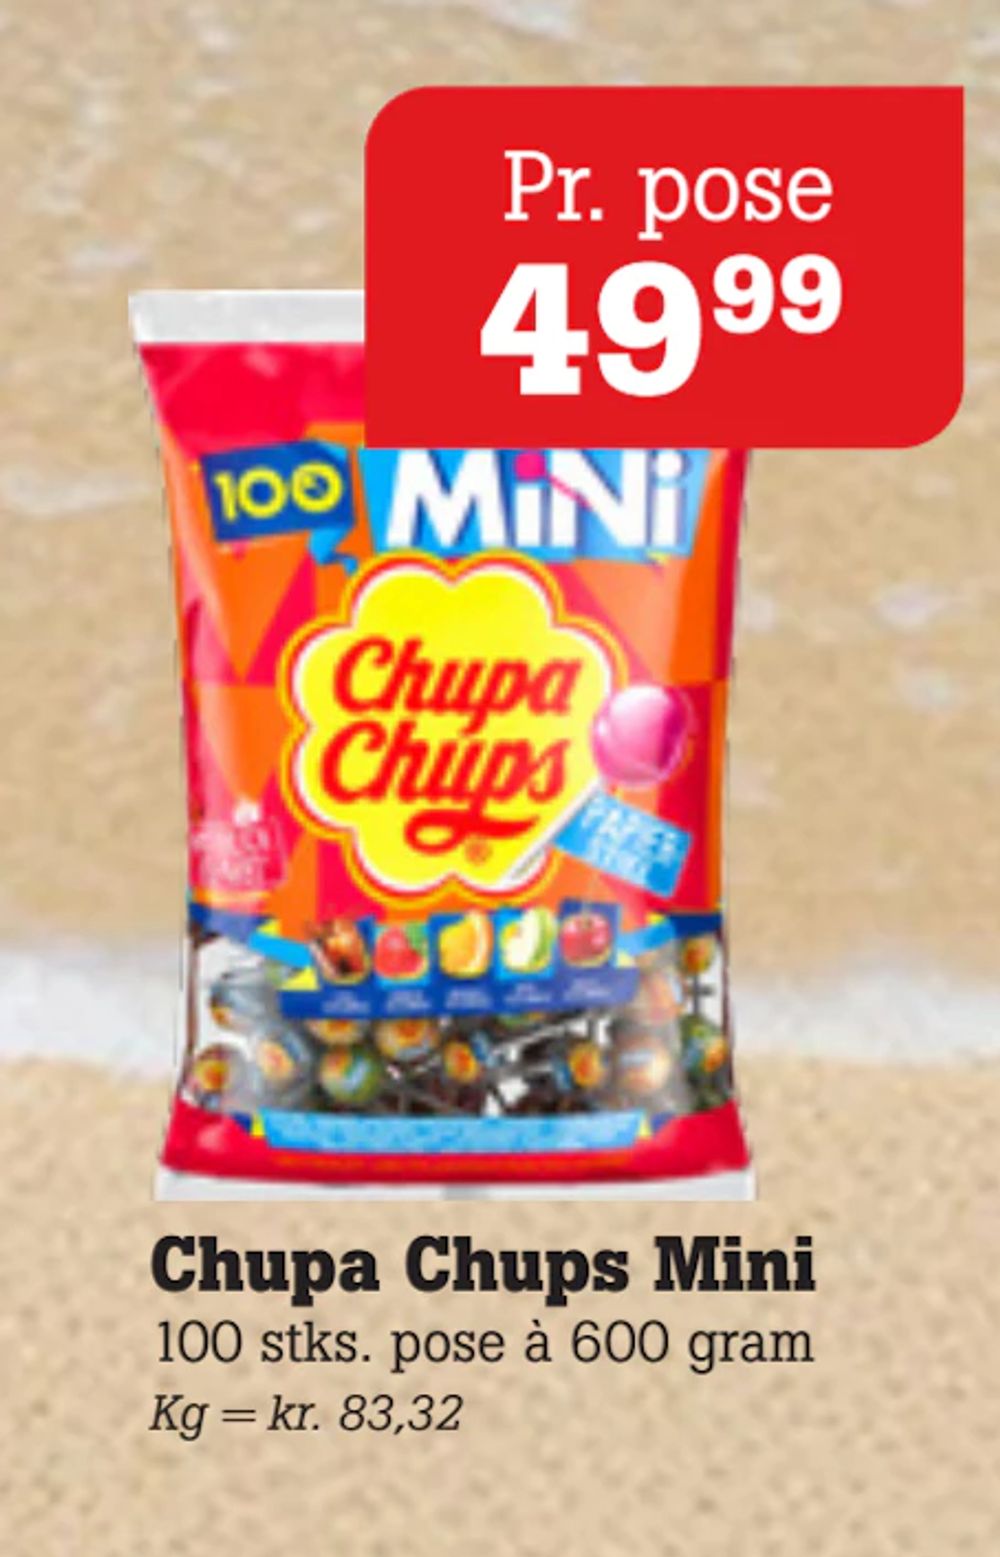 Tilbud på Chupa Chups Mini fra Poetzsch Padborg til 49,99 kr.